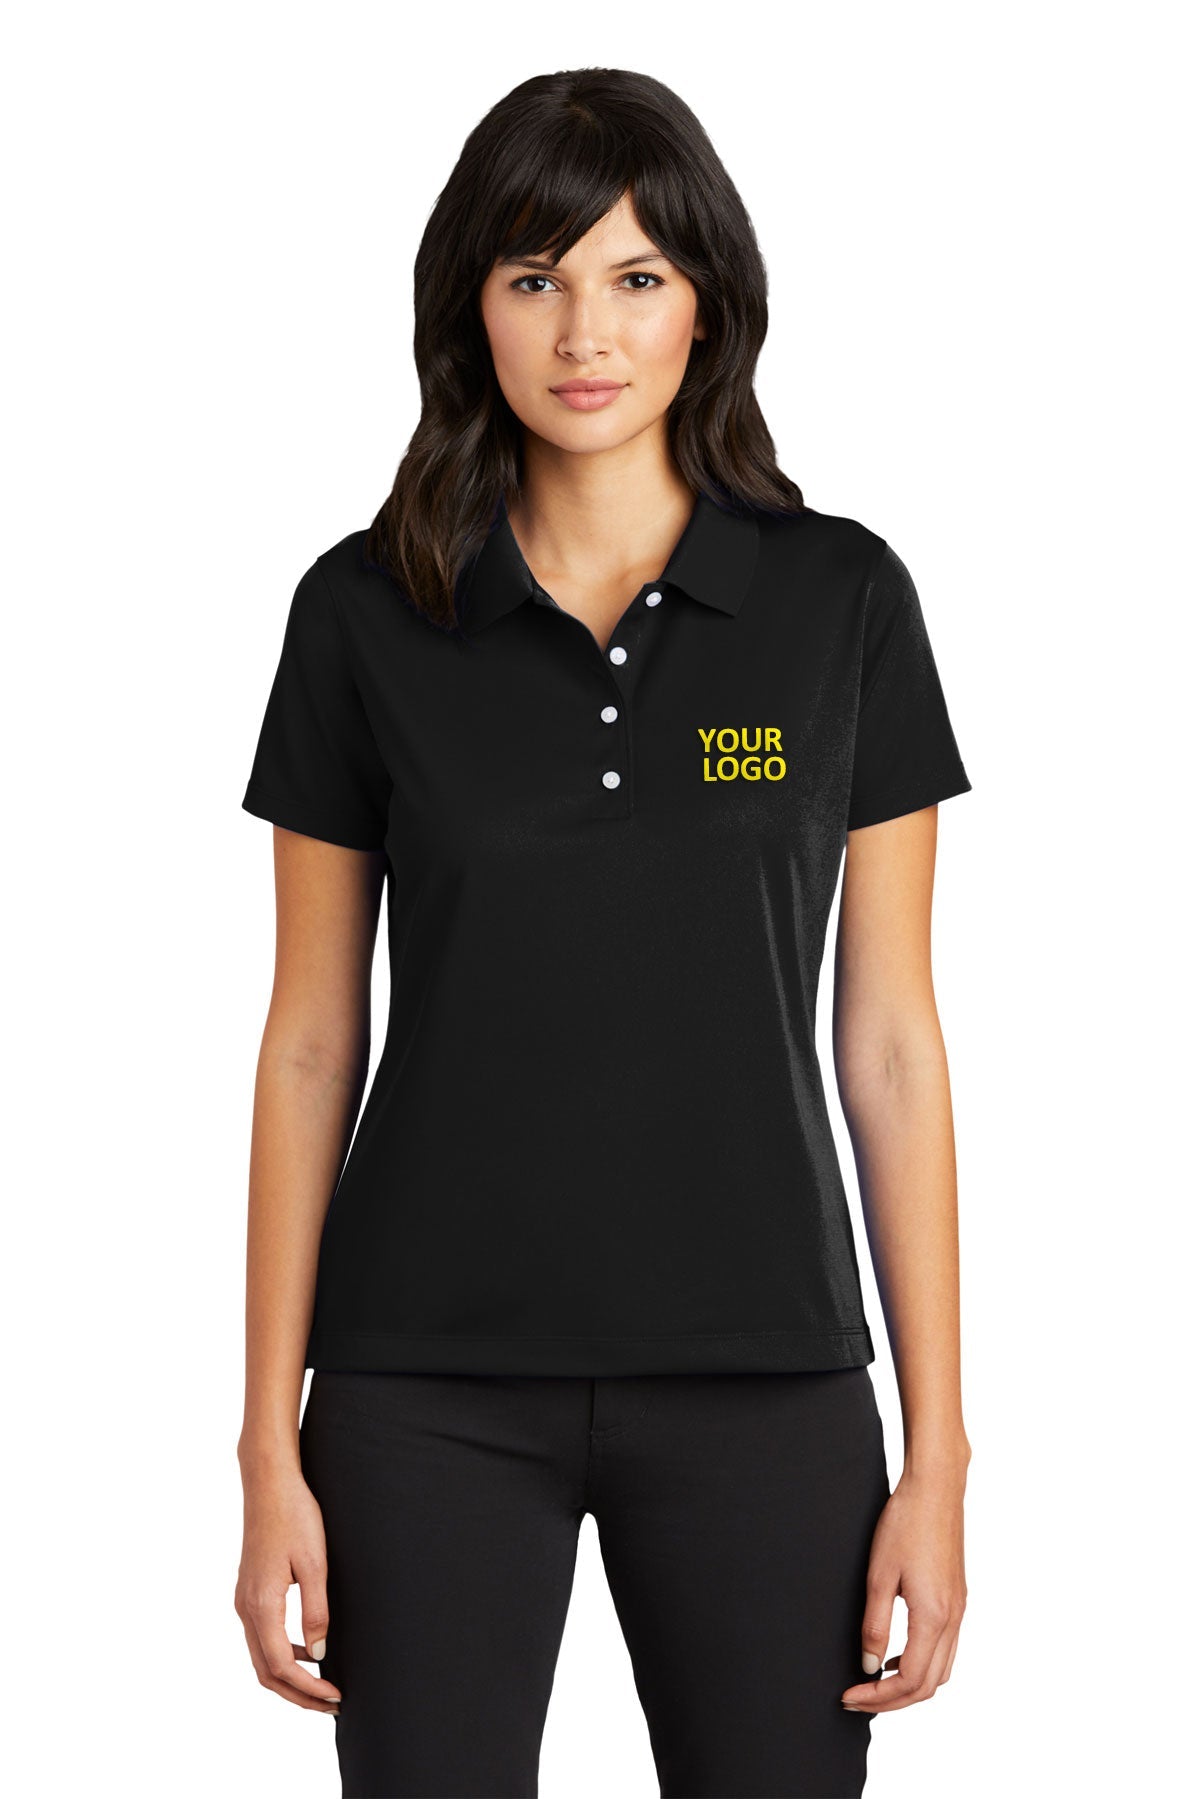 nike black 203697 custom polo shirts dri fit